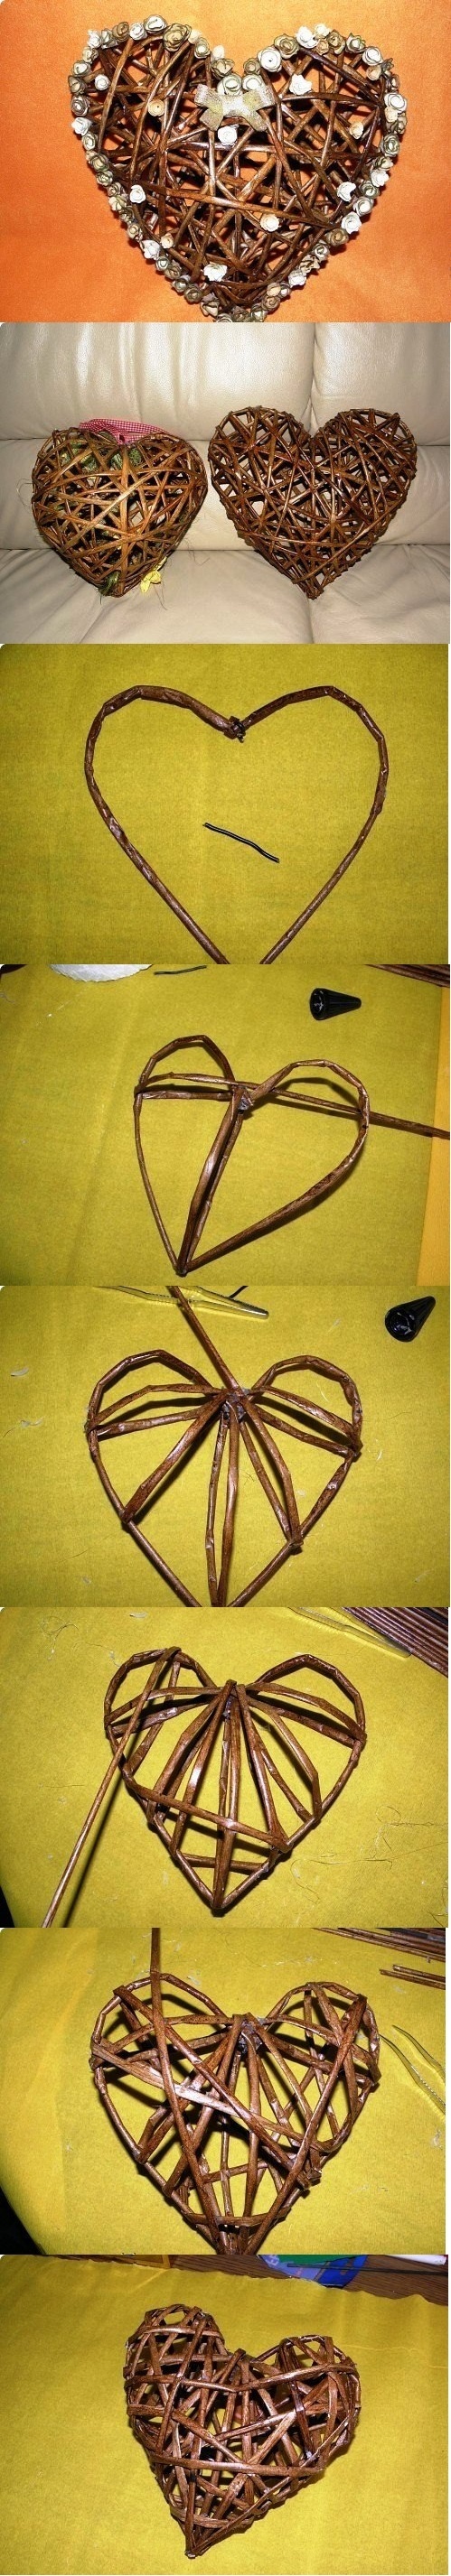 Как сделать сердце своими руками поделка с сердцем как сплести сердце из газетных трубочек схема плетения сердца